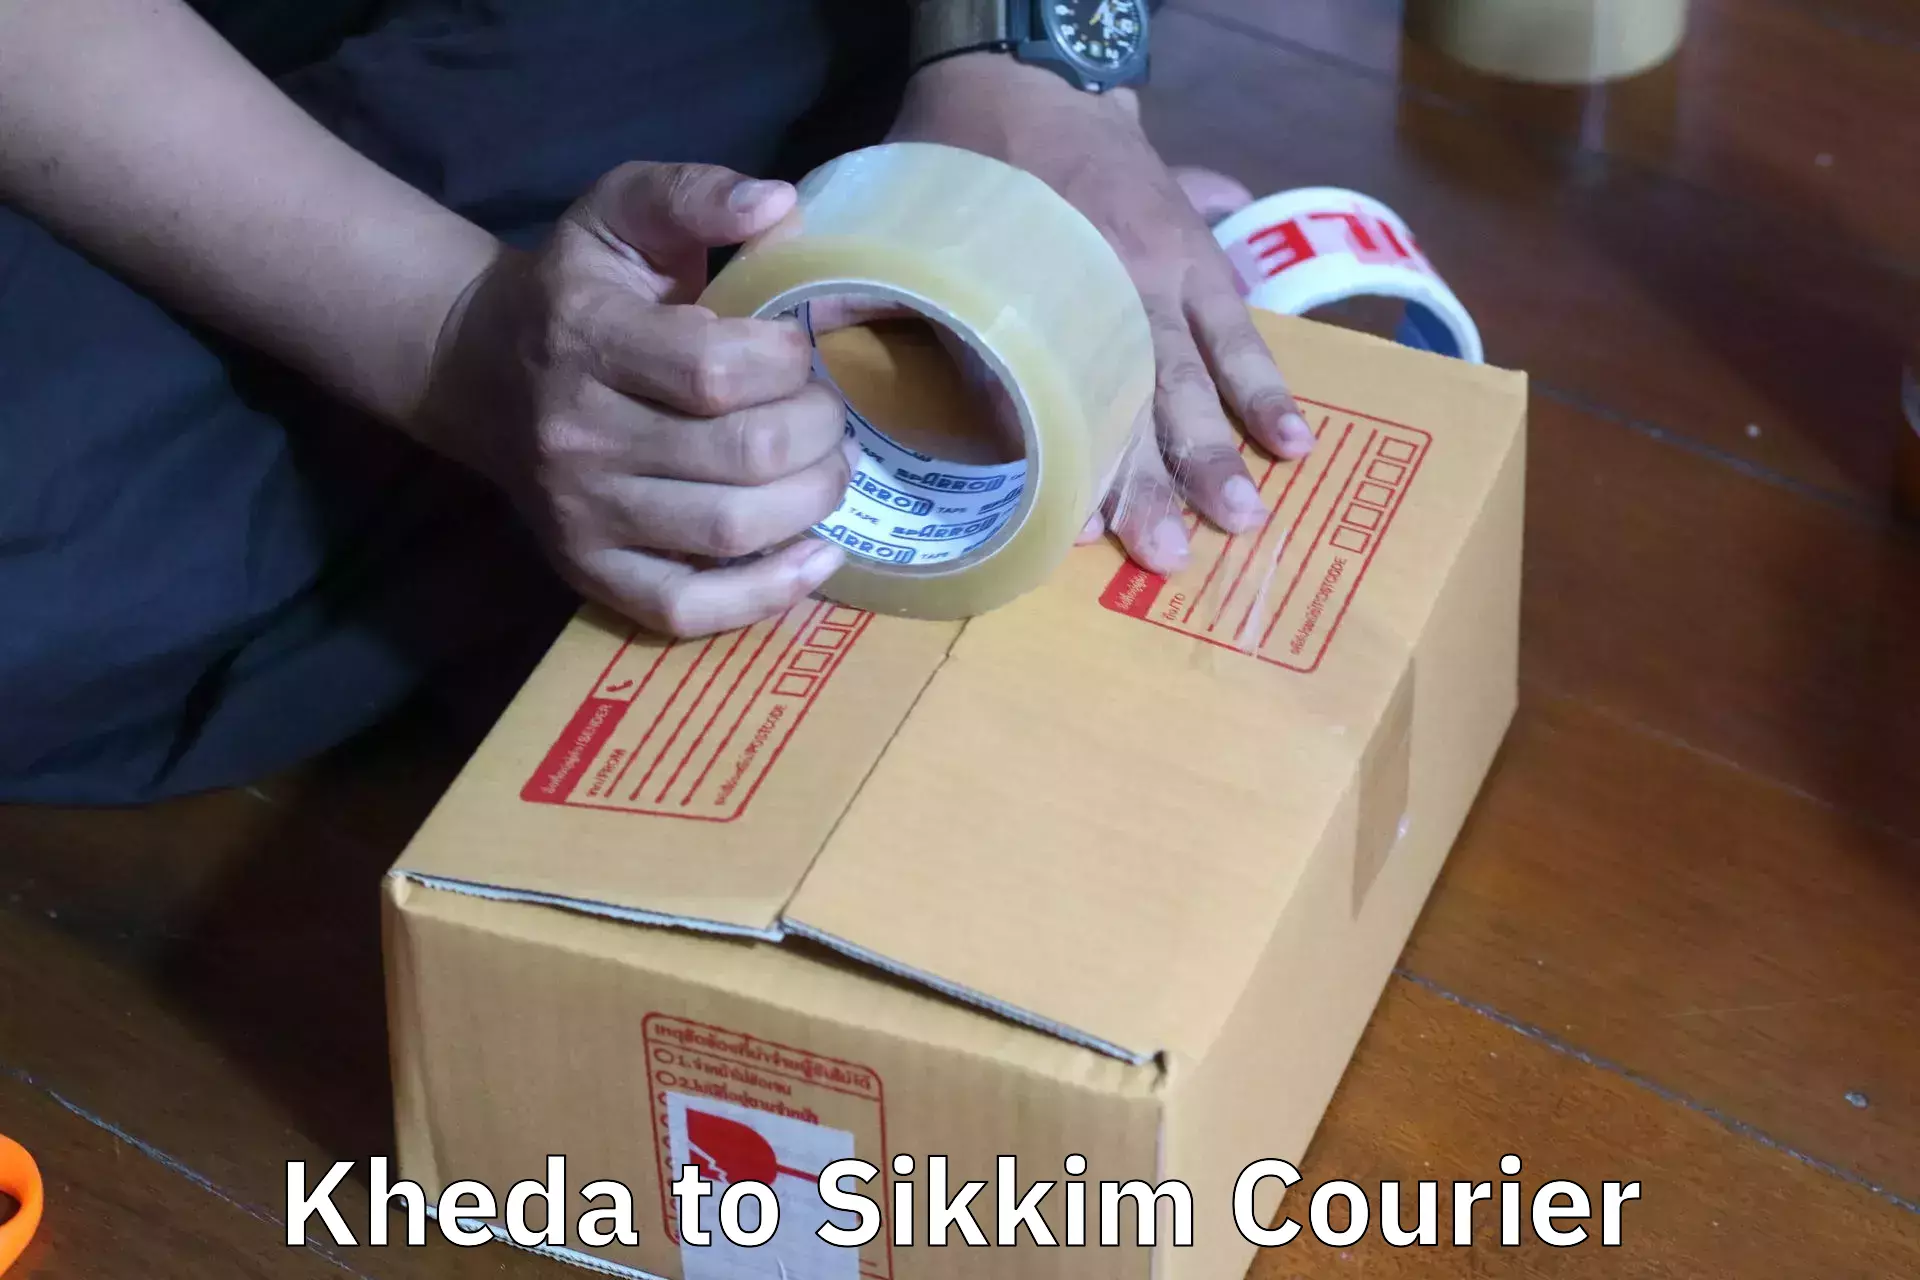 Furniture transport service Kheda to West Sikkim